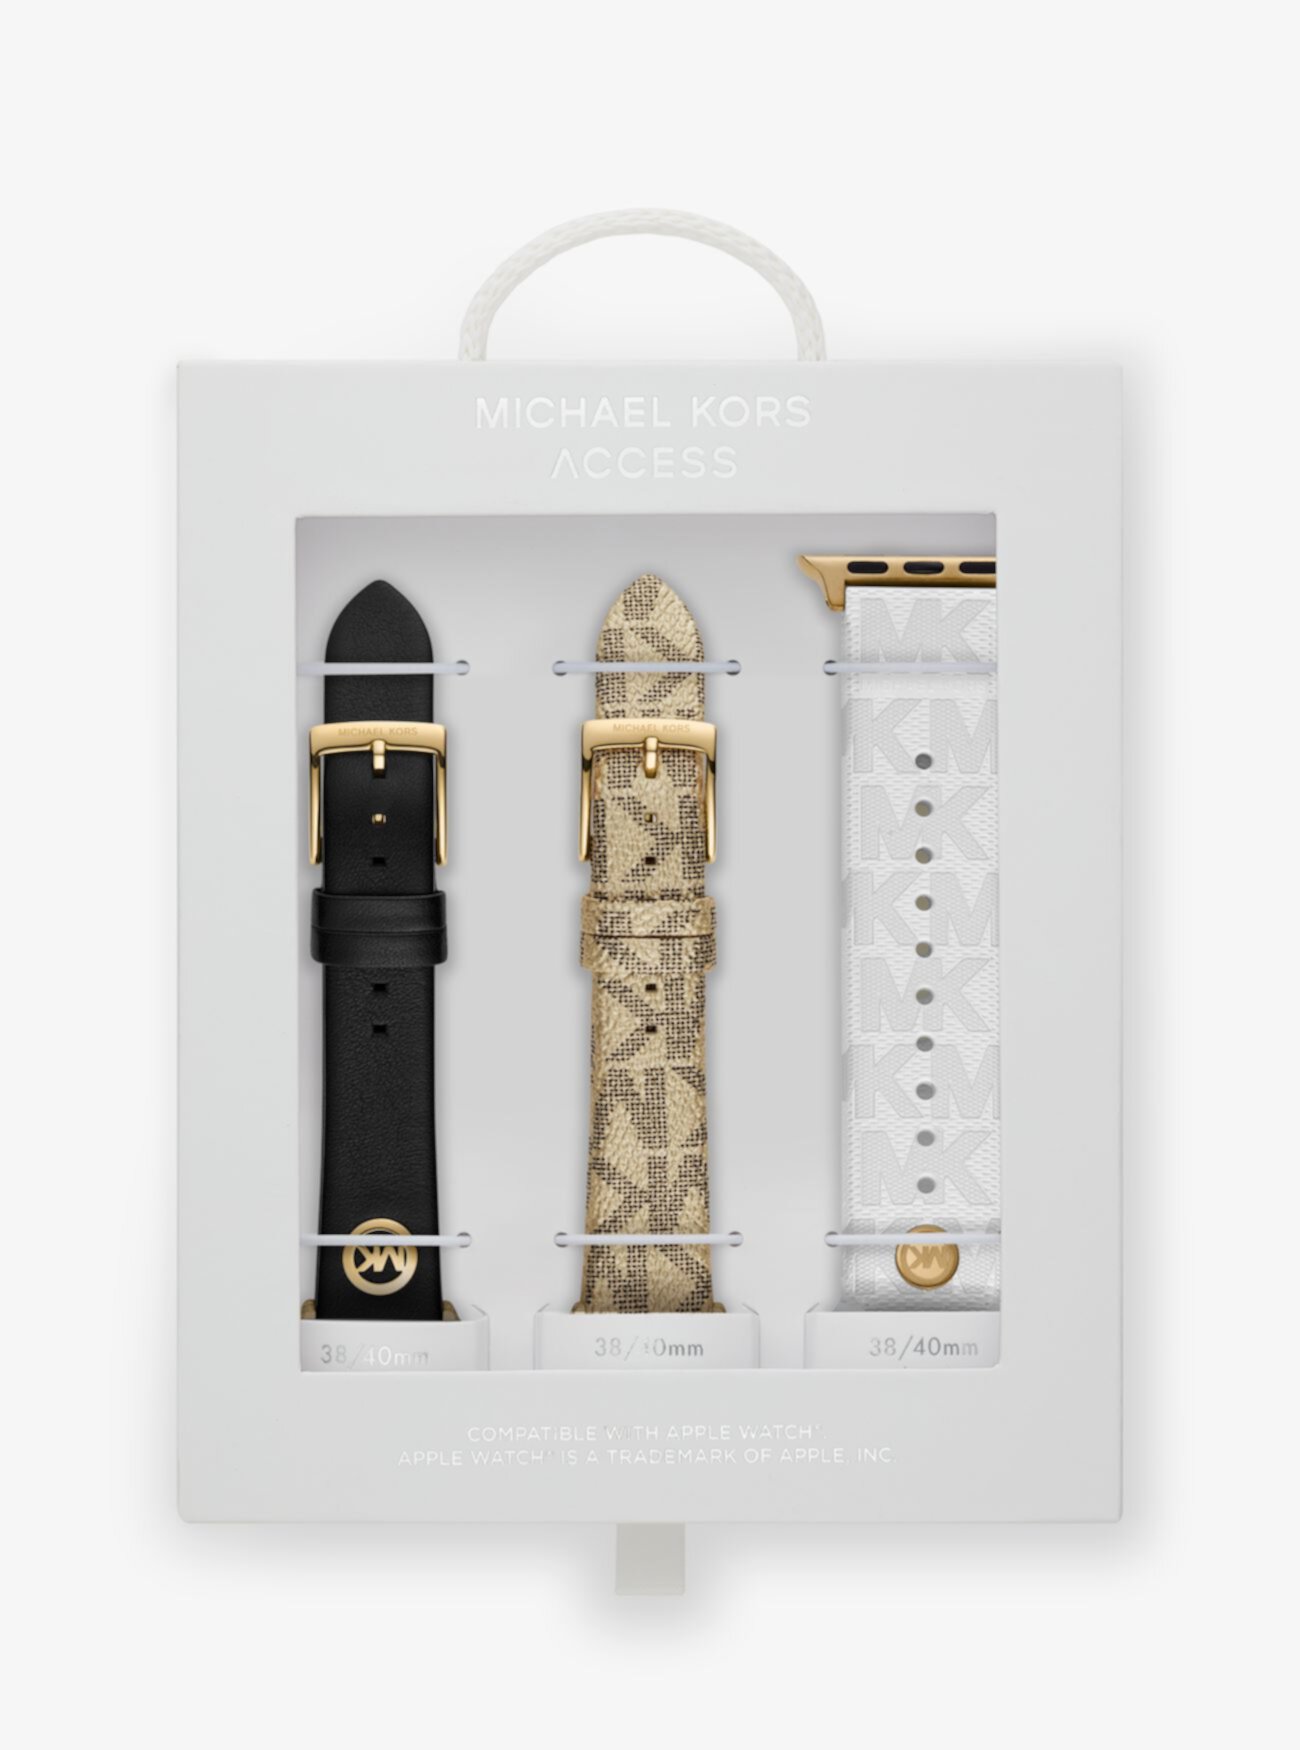 Логотип и резиновые ремешки для подарочного набора Apple Watch® Michael Kors